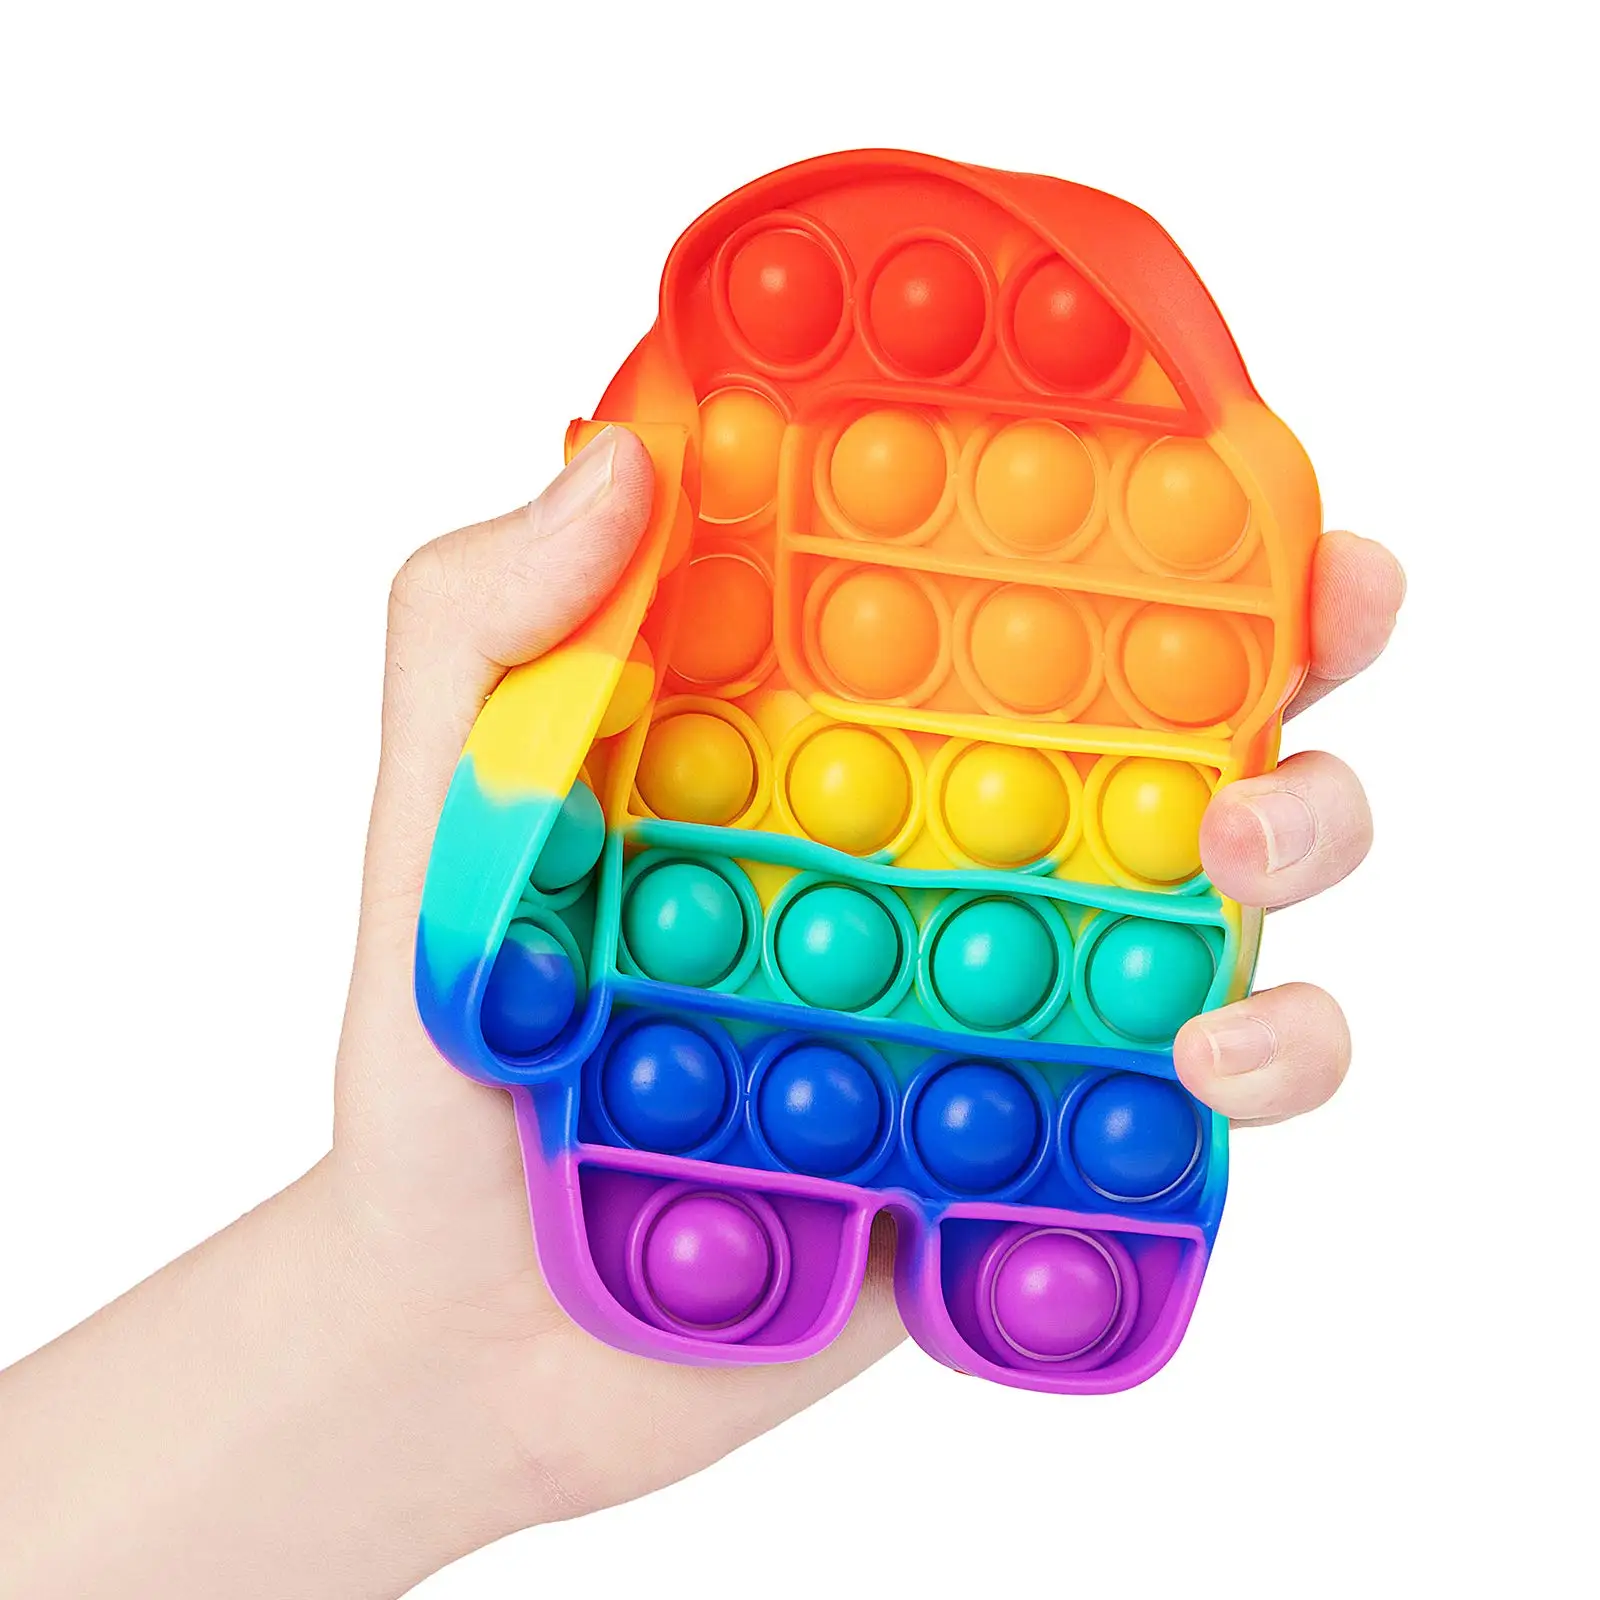 

Силиконовые игрушки для снятия стресса при аутизме, особой необходимости